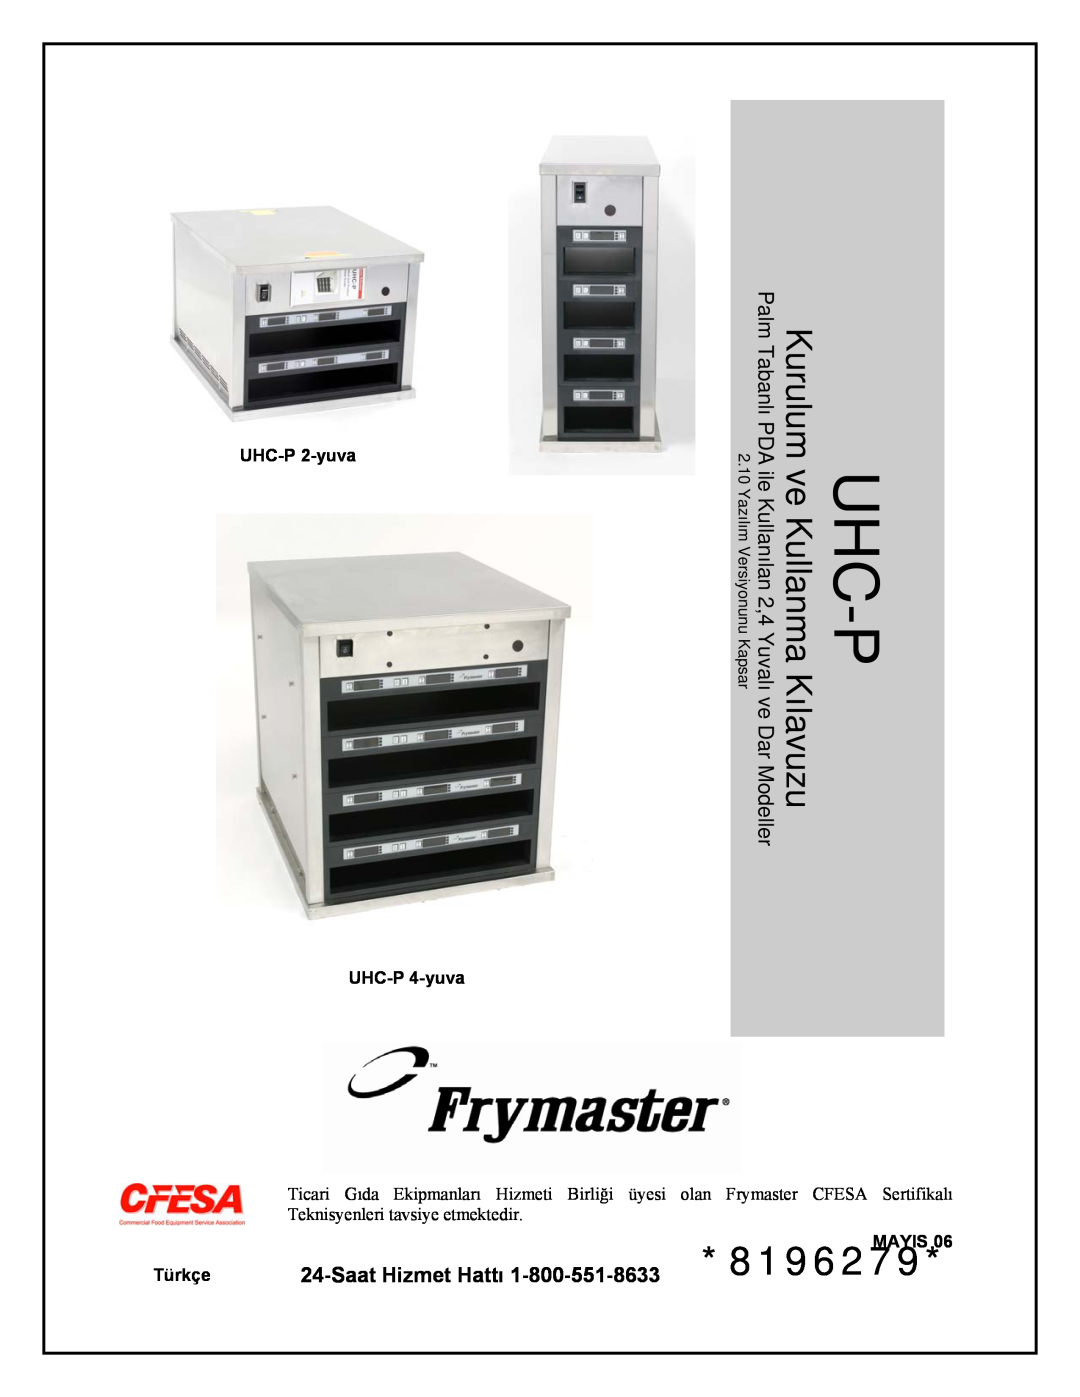 Frymaster UHC-P 2-yuva manual Uhc-P, 8196279, Kılavuzu, Kurulum ve Kullanma, Ticari Gıda Ekipmanları Hizmeti Birliği üyesi 